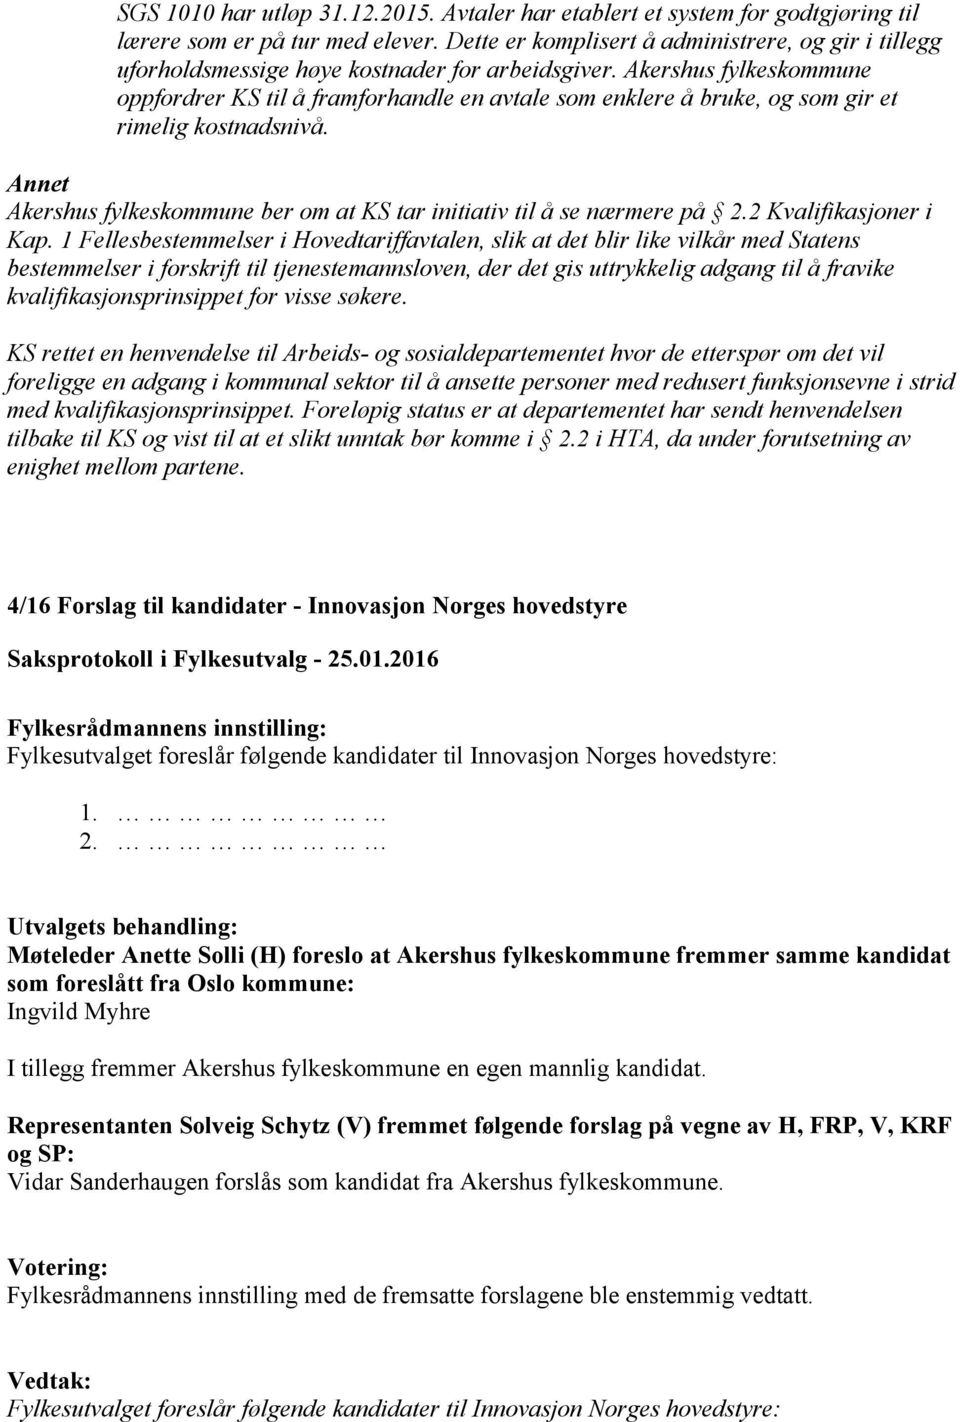 Akershus fylkeskommune oppfordrer KS til å framforhandle en avtale som enklere å bruke, og som gir et rimelig kostnadsnivå.